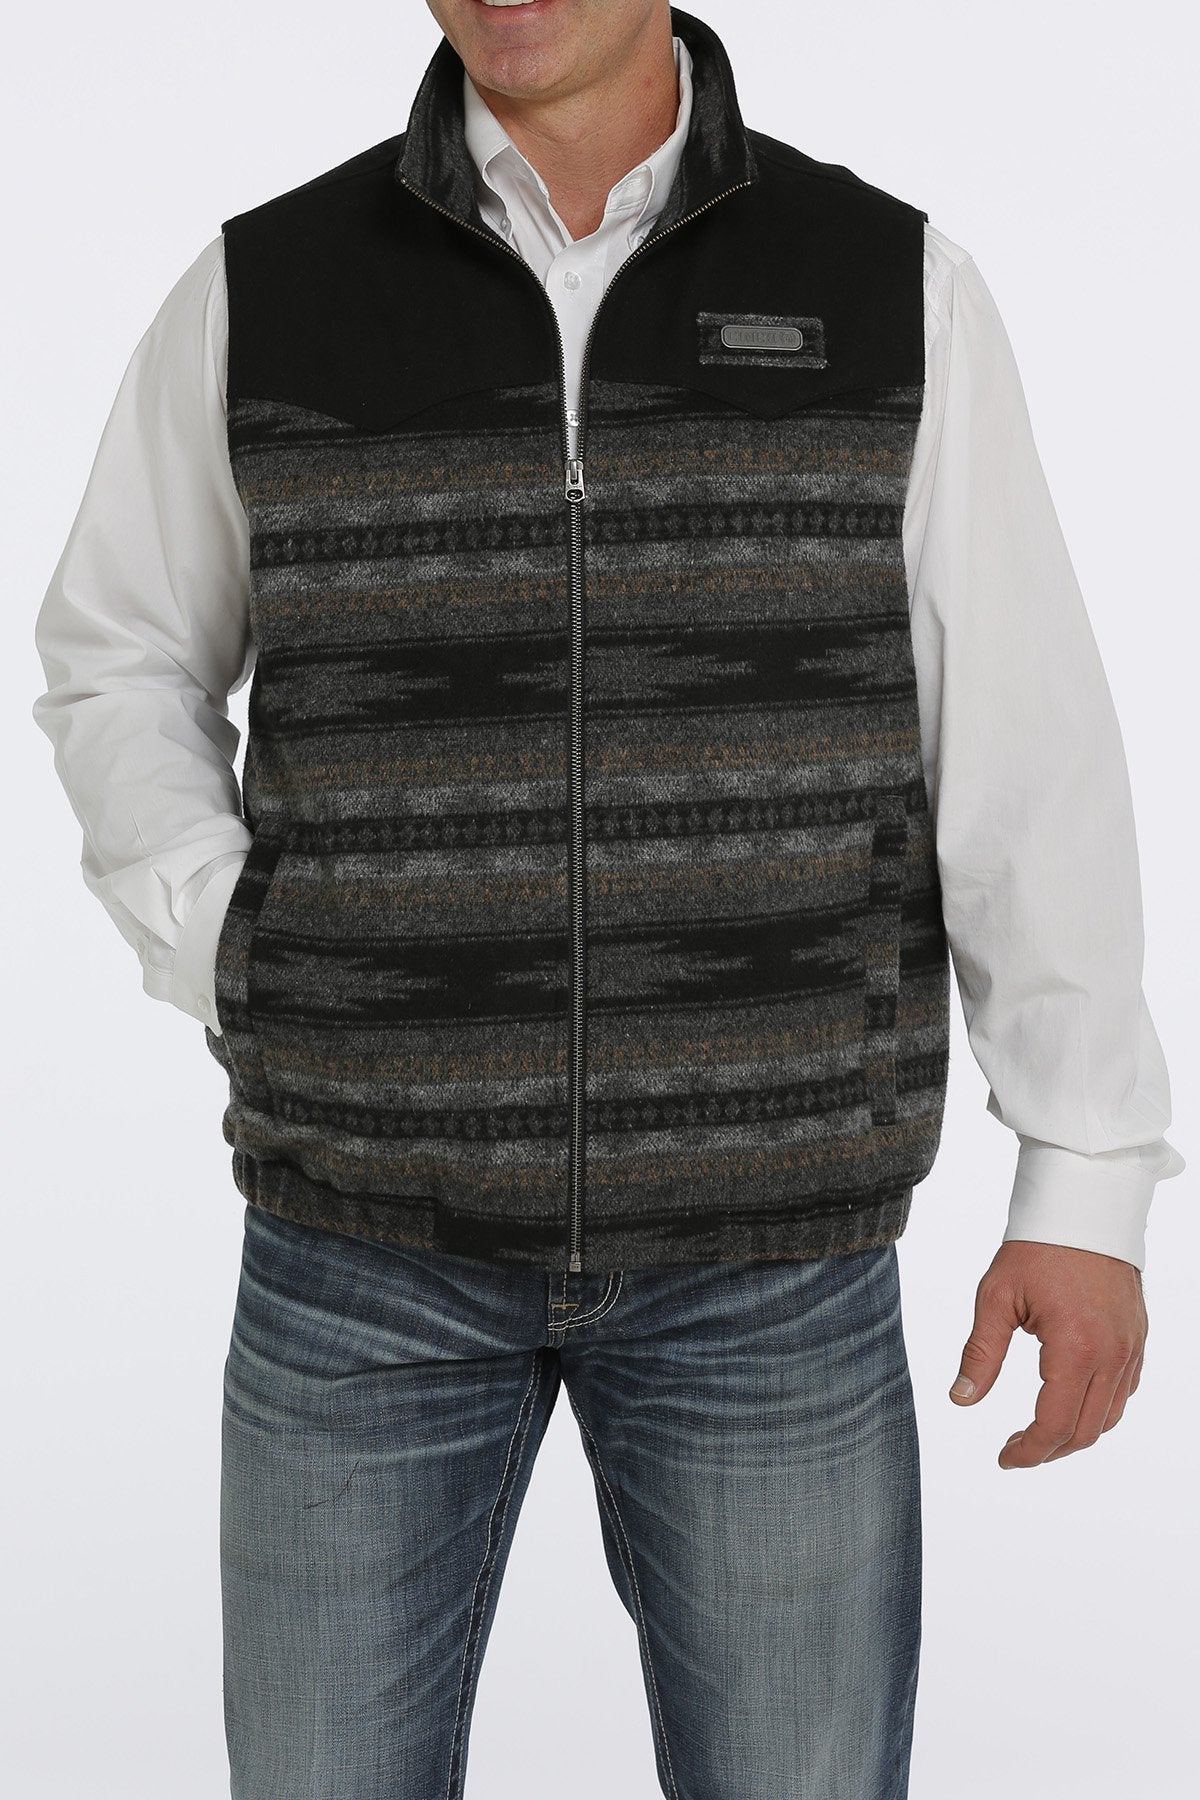 Cinch Men's Wooly Vest